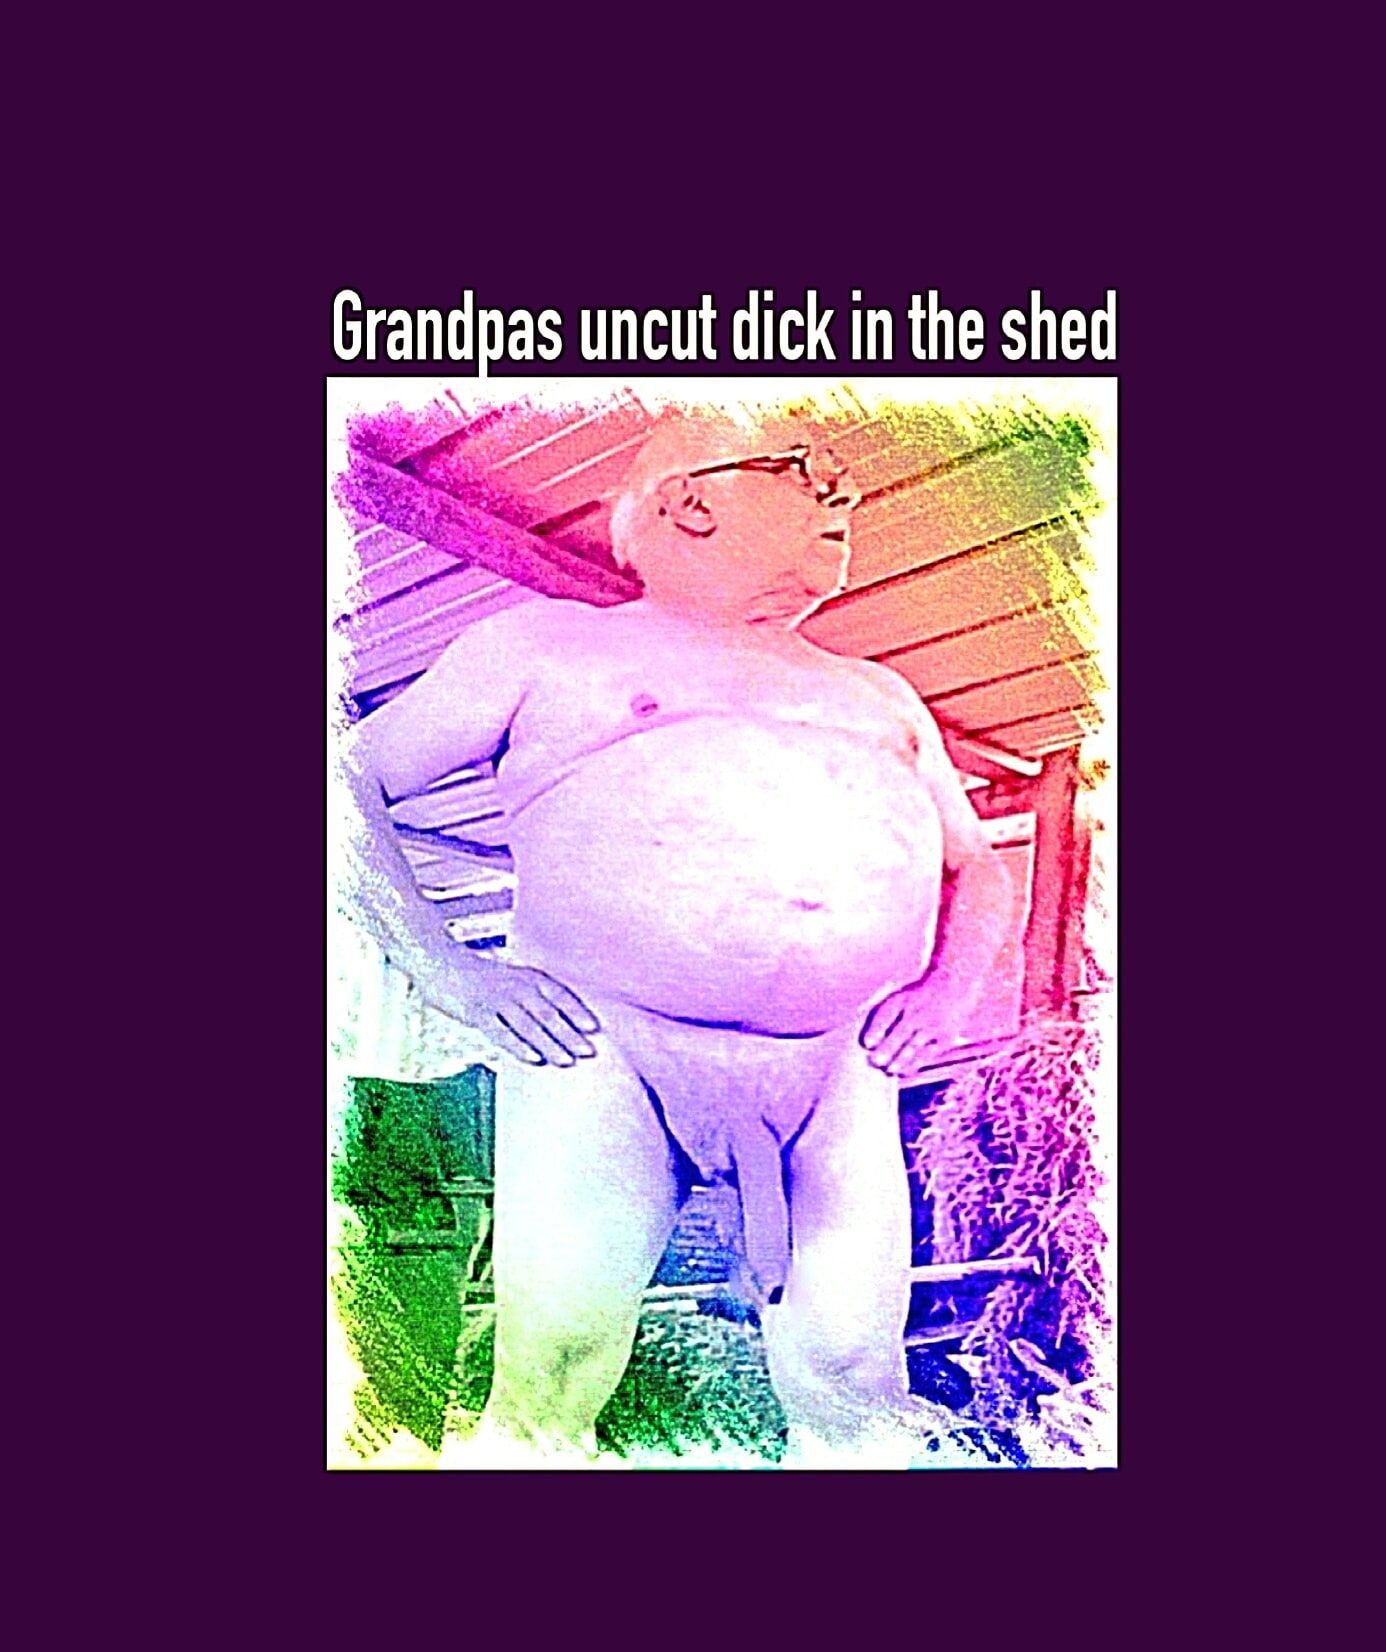 Grandpas uncut dick